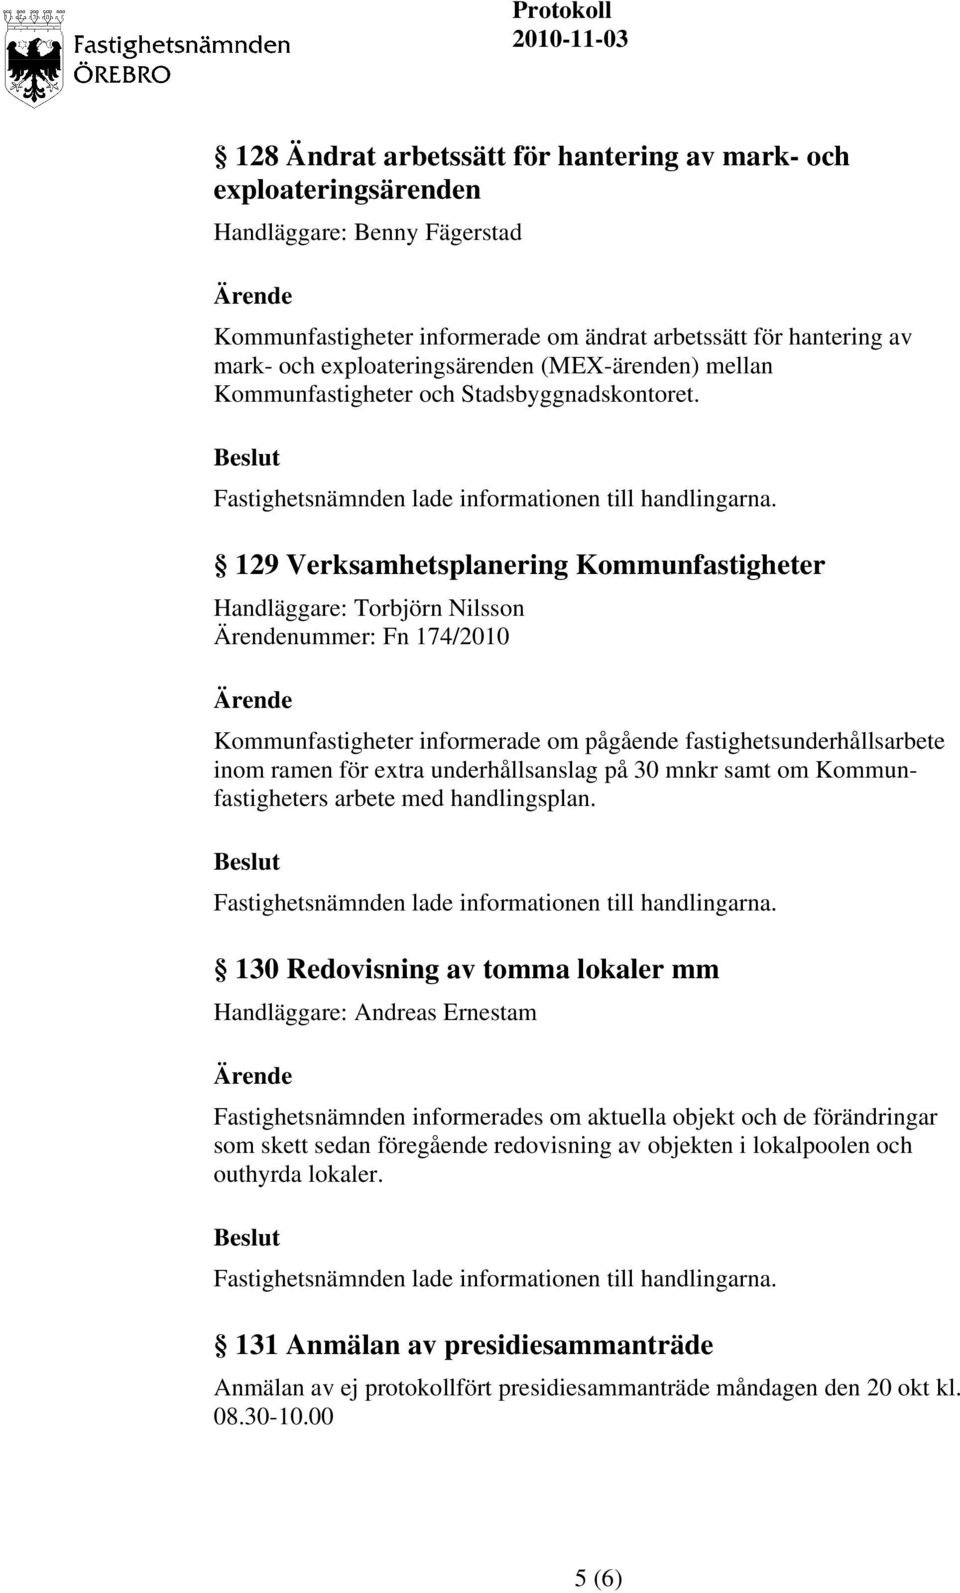 129 Verksamhetsplanering Kommunfastigheter Handläggare: Torbjörn Nilsson nummer: Fn 174/2010 Kommunfastigheter informerade om pågående fastighetsunderhållsarbete inom ramen för extra underhållsanslag